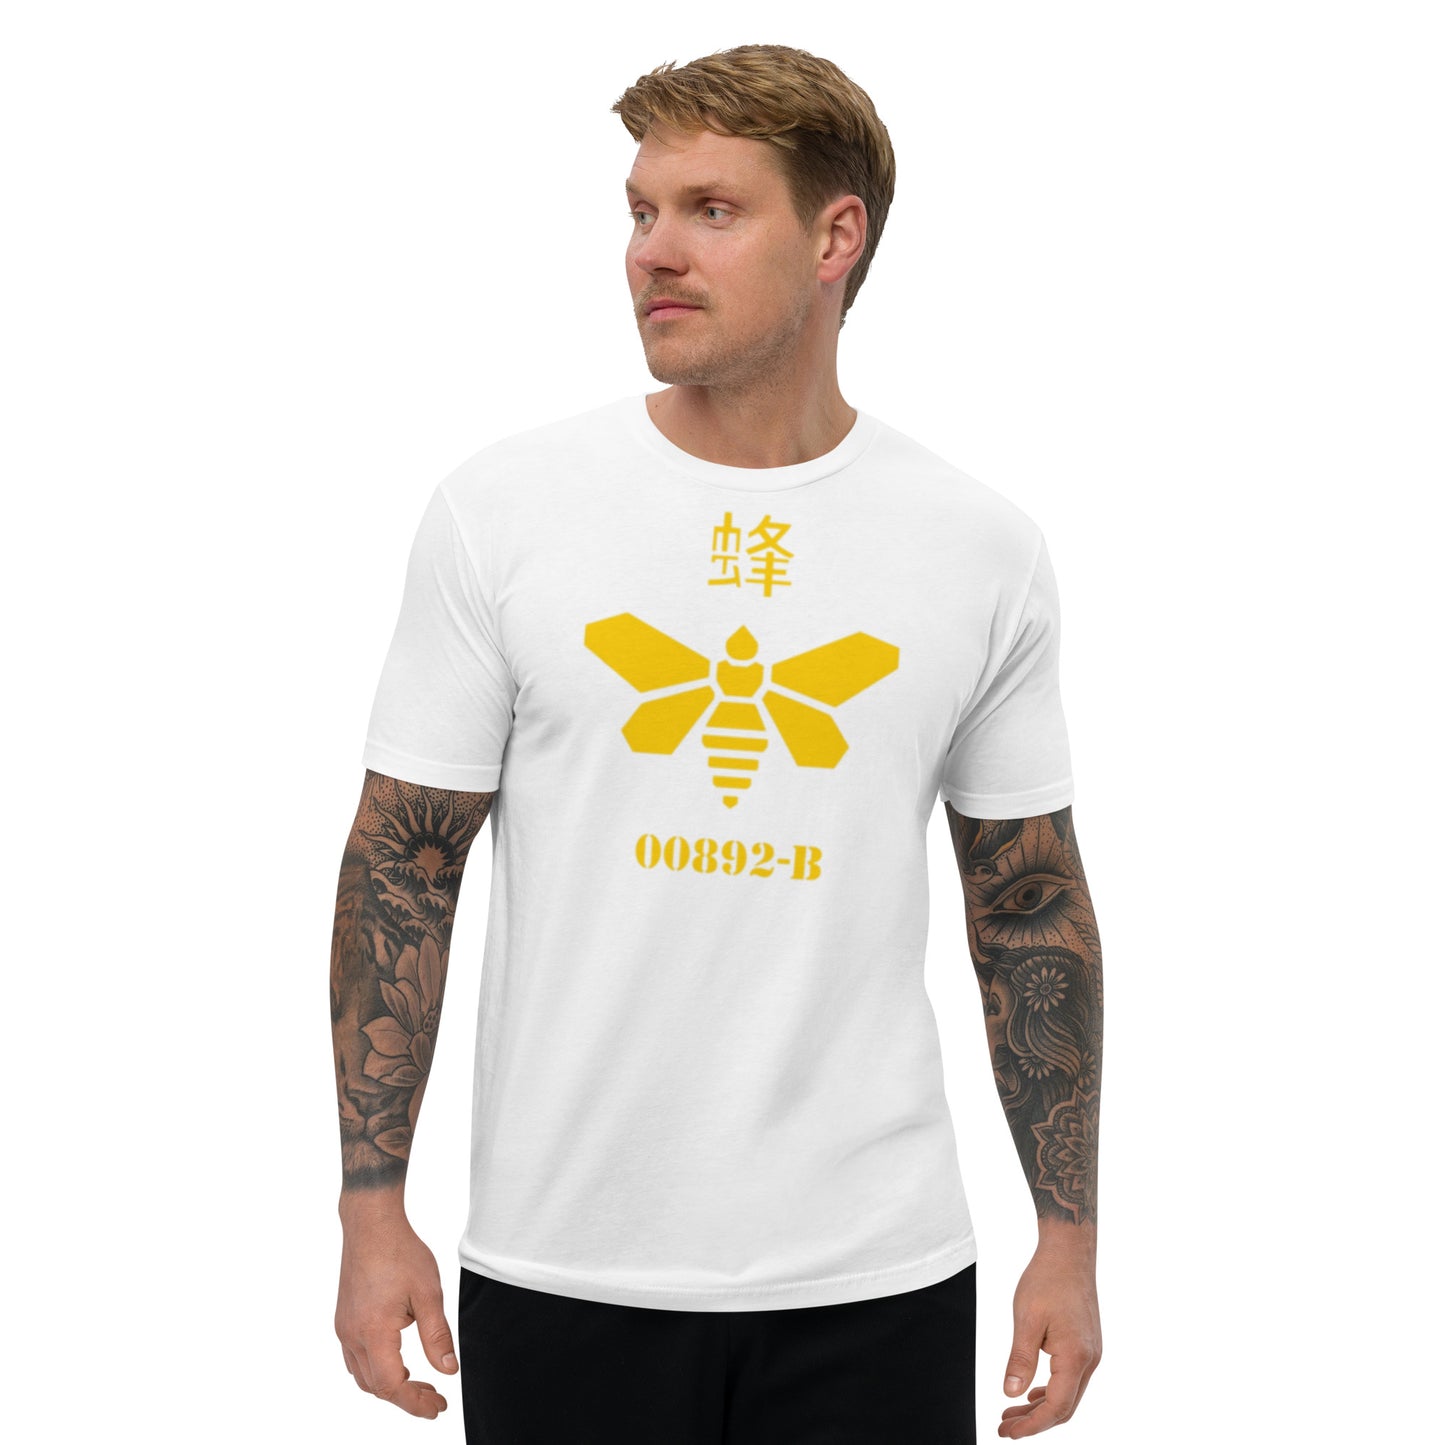 breaking bad golden moth t-paita laadukas hieno miesten netistä klarna osamaksu